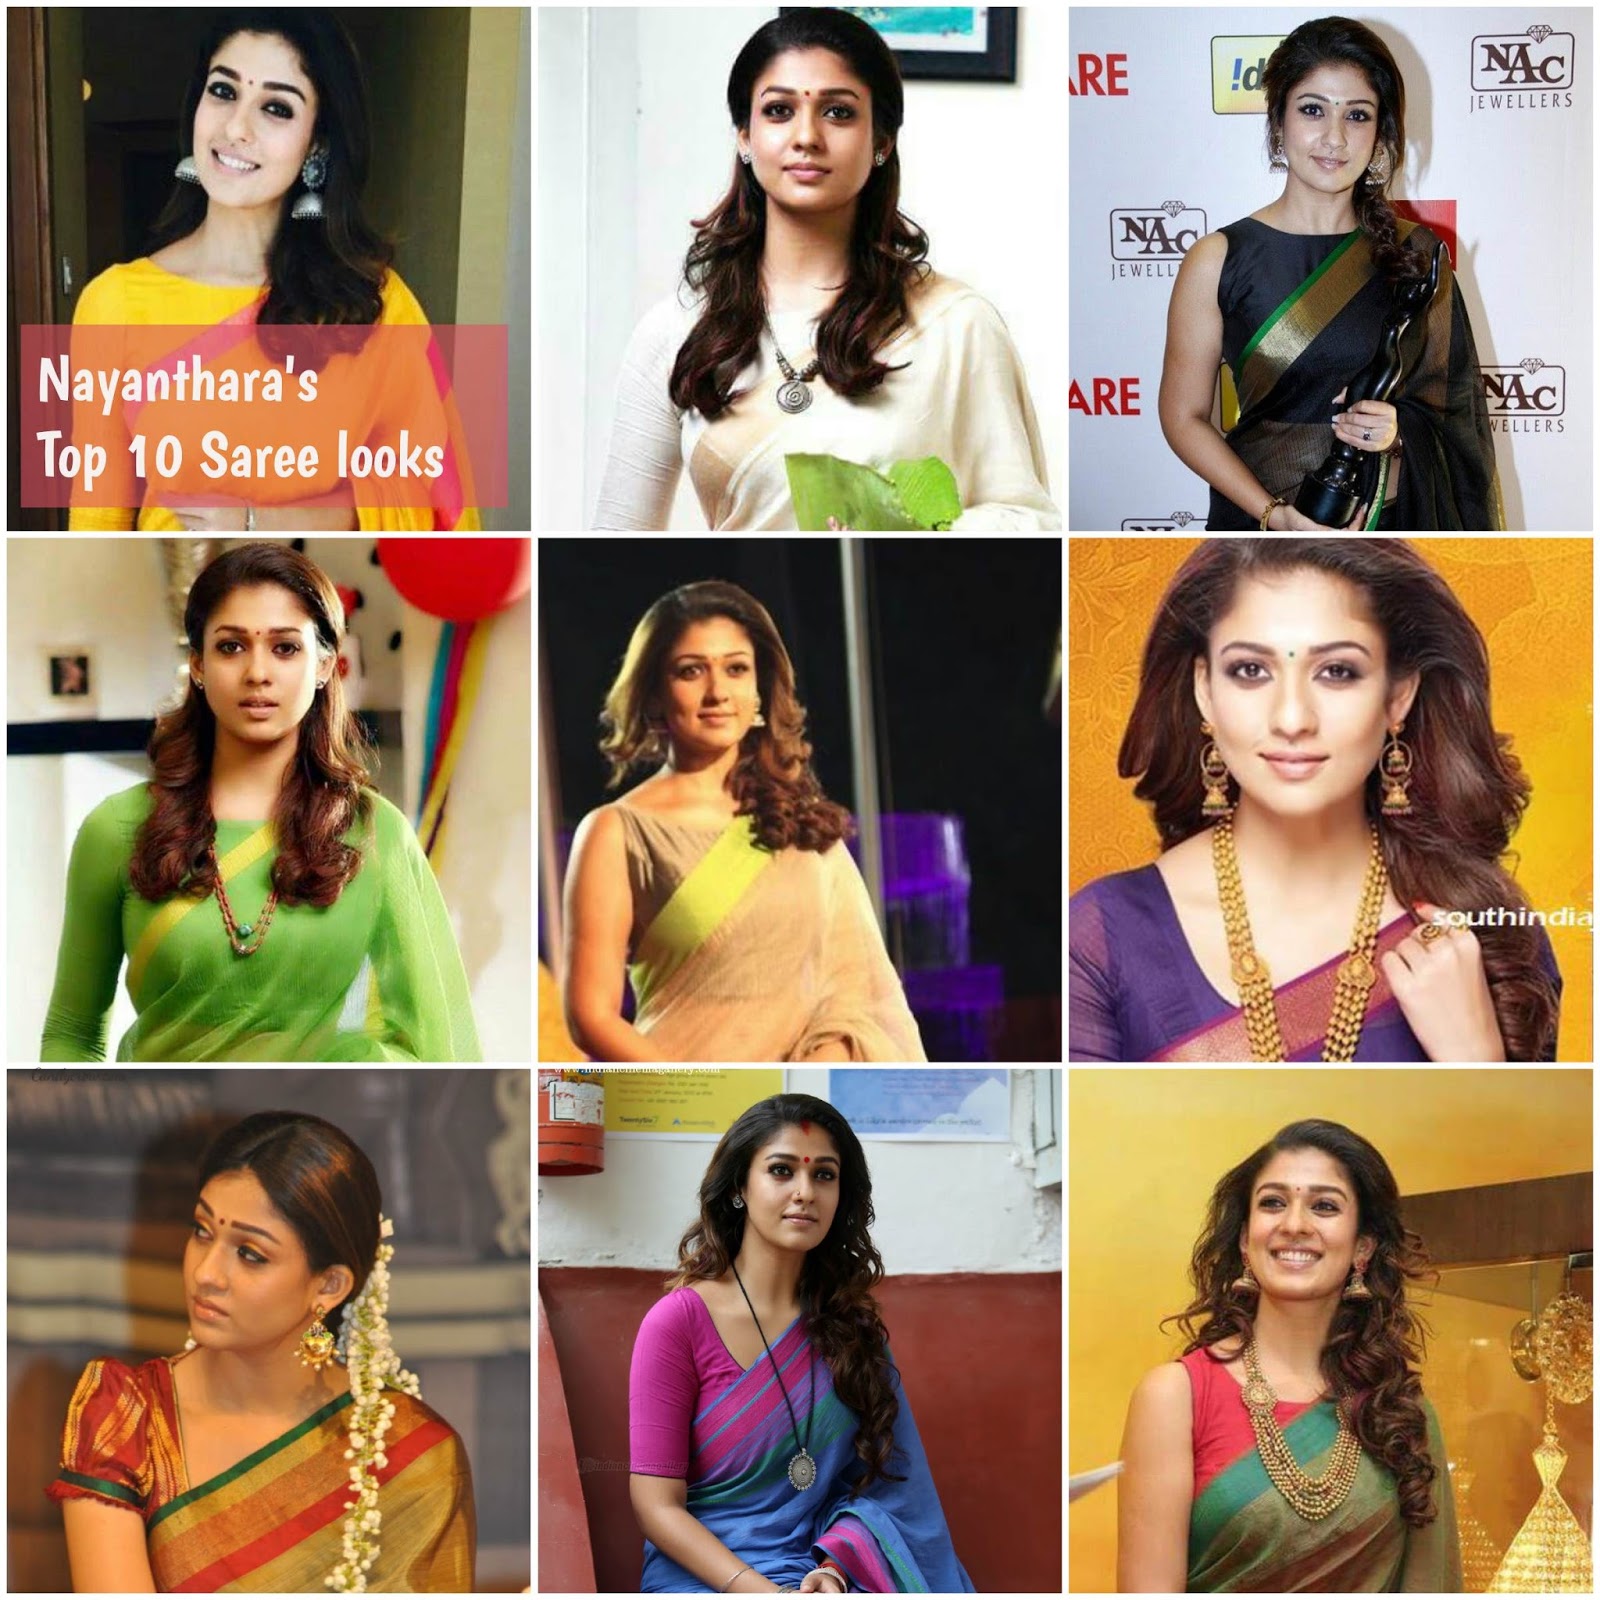 Nayanthara's Top 10 Saree Looks